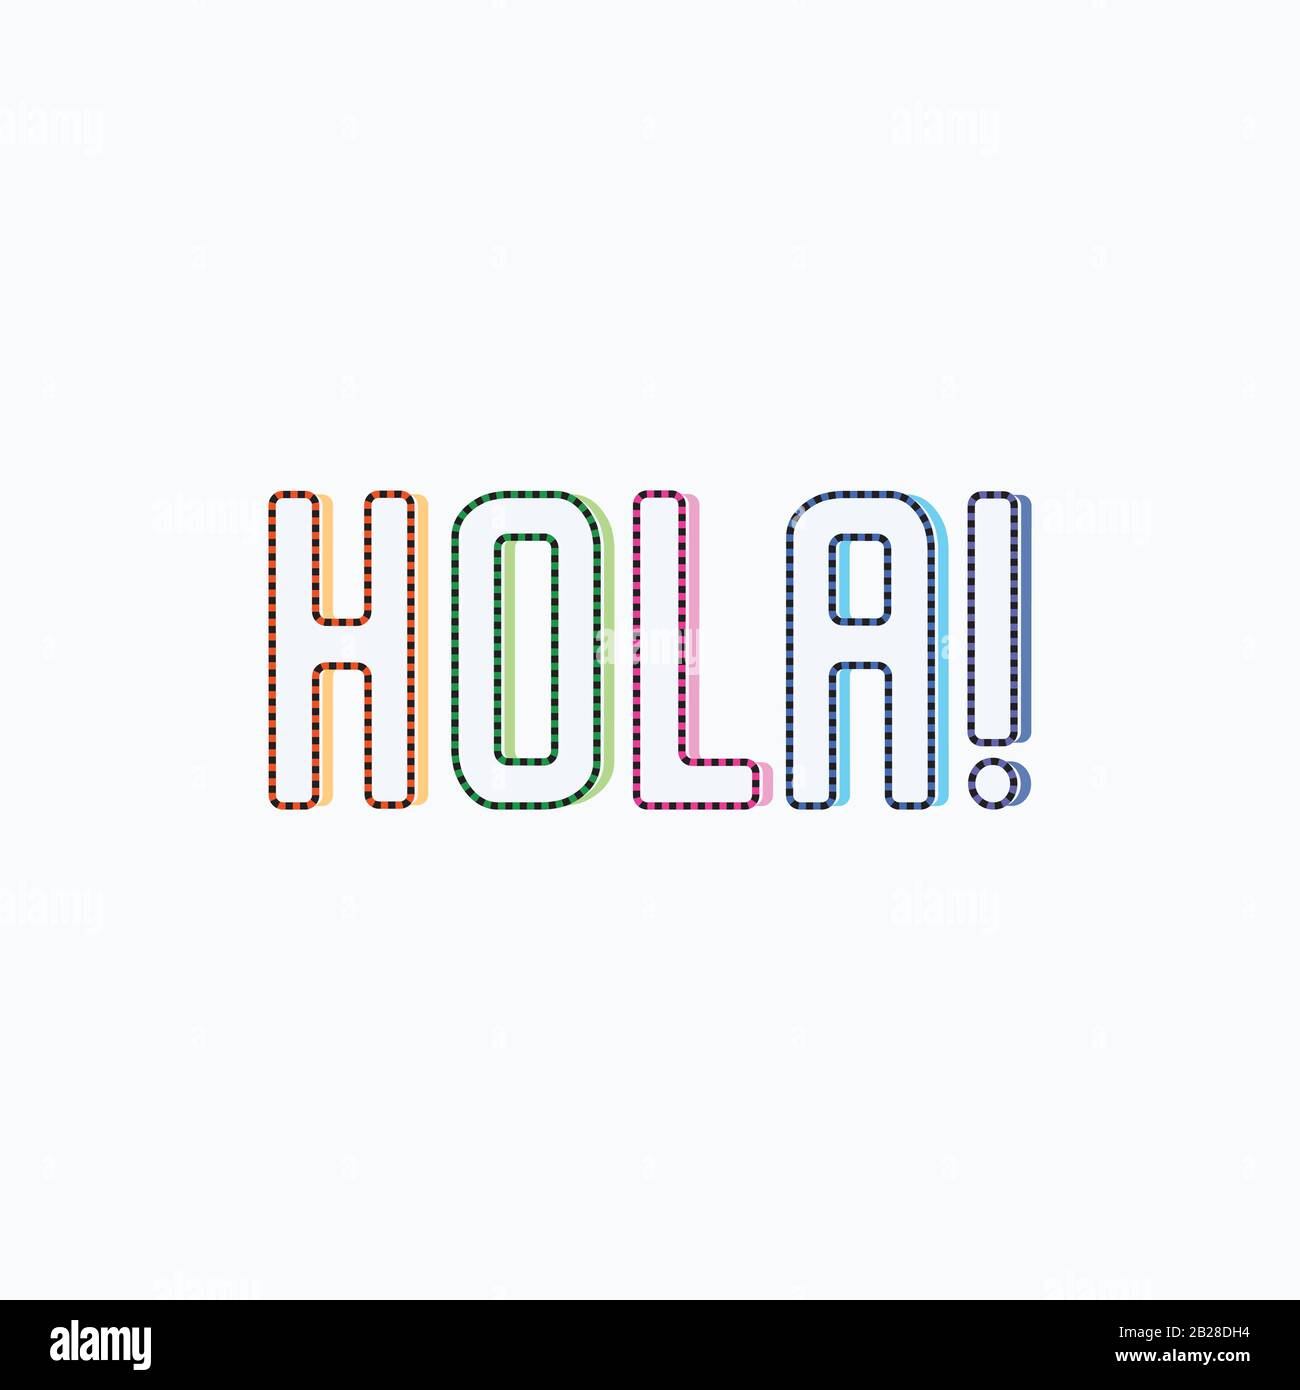 Hola spanisch Wort Übersetzung von Hallo Hallo Gruß, Hola Typografie Sprache Stock Vektor